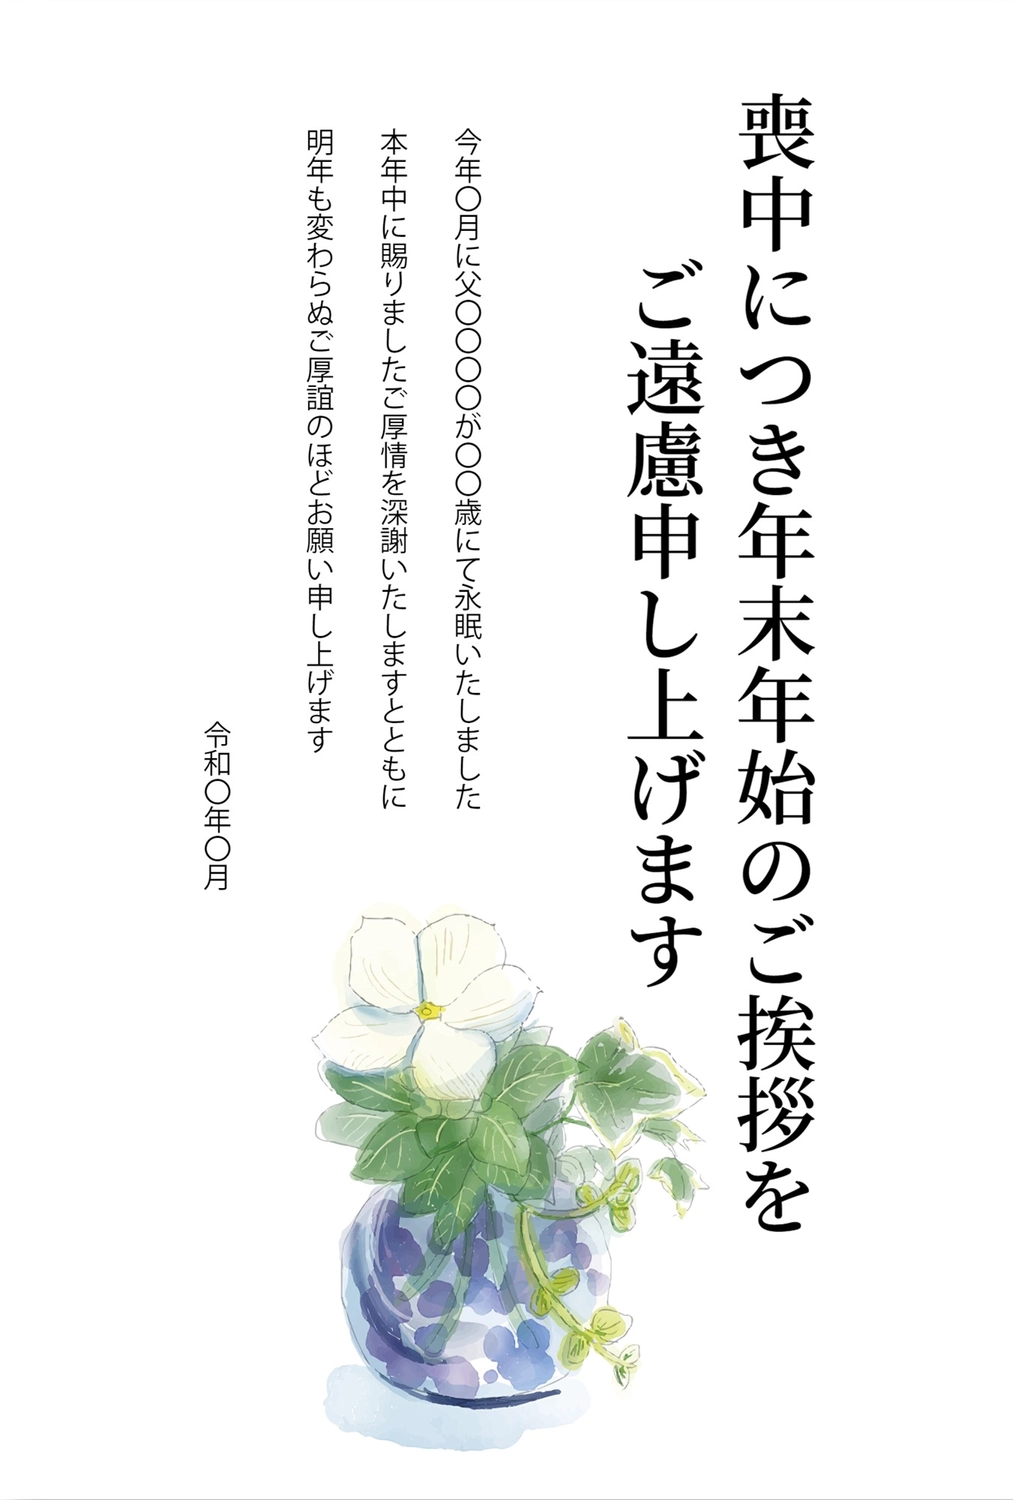 花瓶の喪中はがき, White flower, death, condolence, Mourning Postcard template